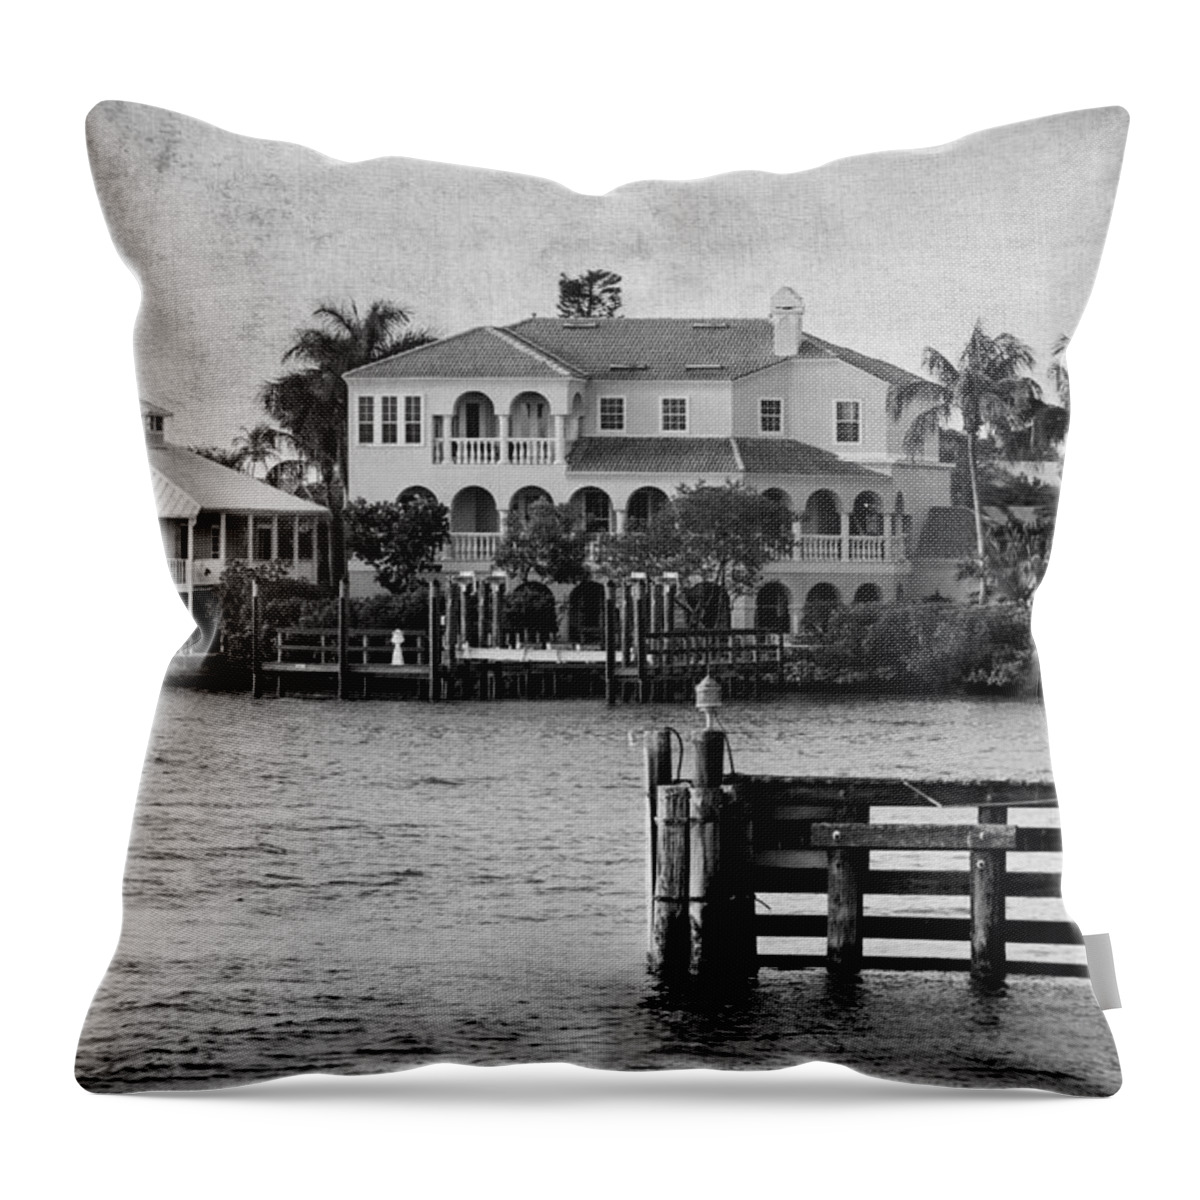 Matanzas Passfort Myers Beach Throw Pillow featuring the photograph Matanzas Pass - Fort Myers Beach - Florida by Kim Hojnacki